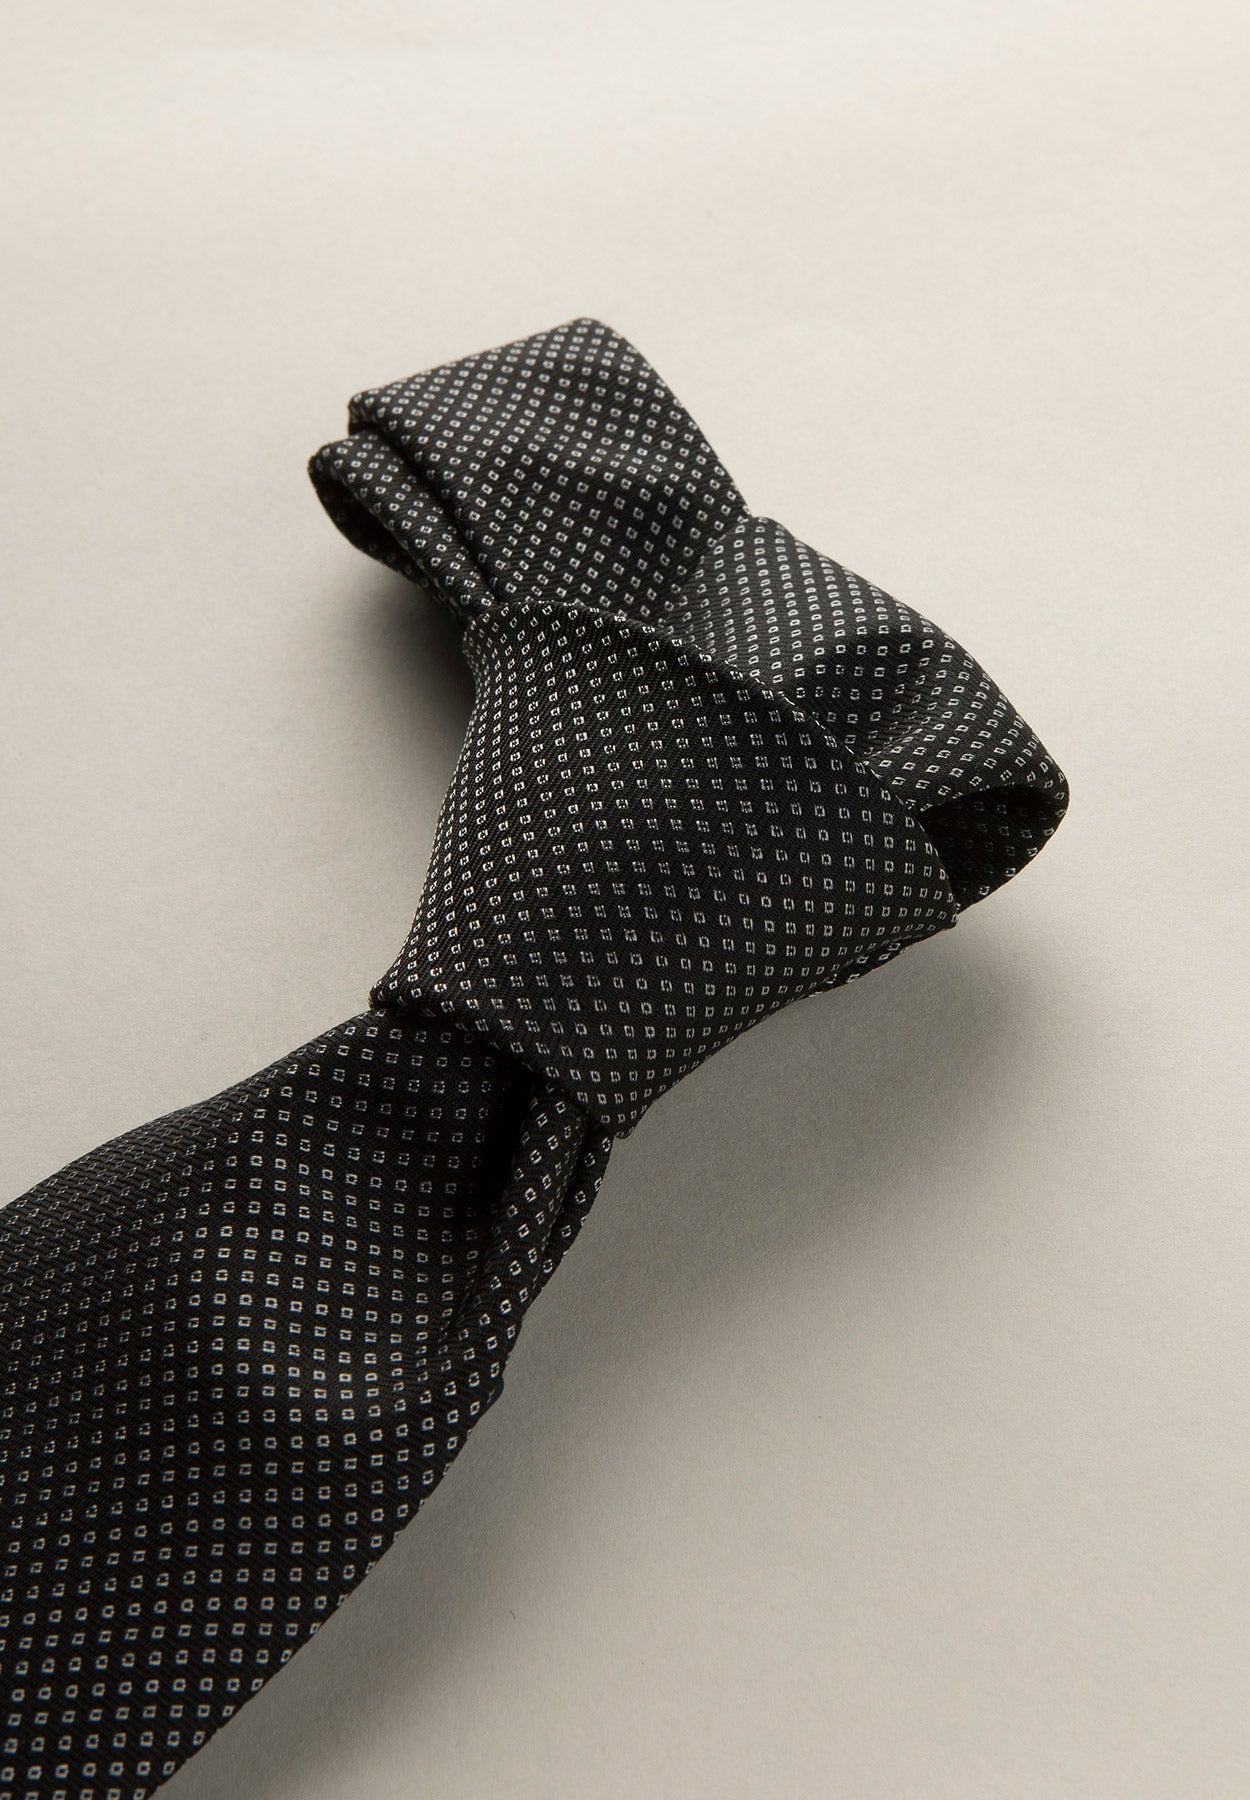 Cravatta nera microdisegno perla seta